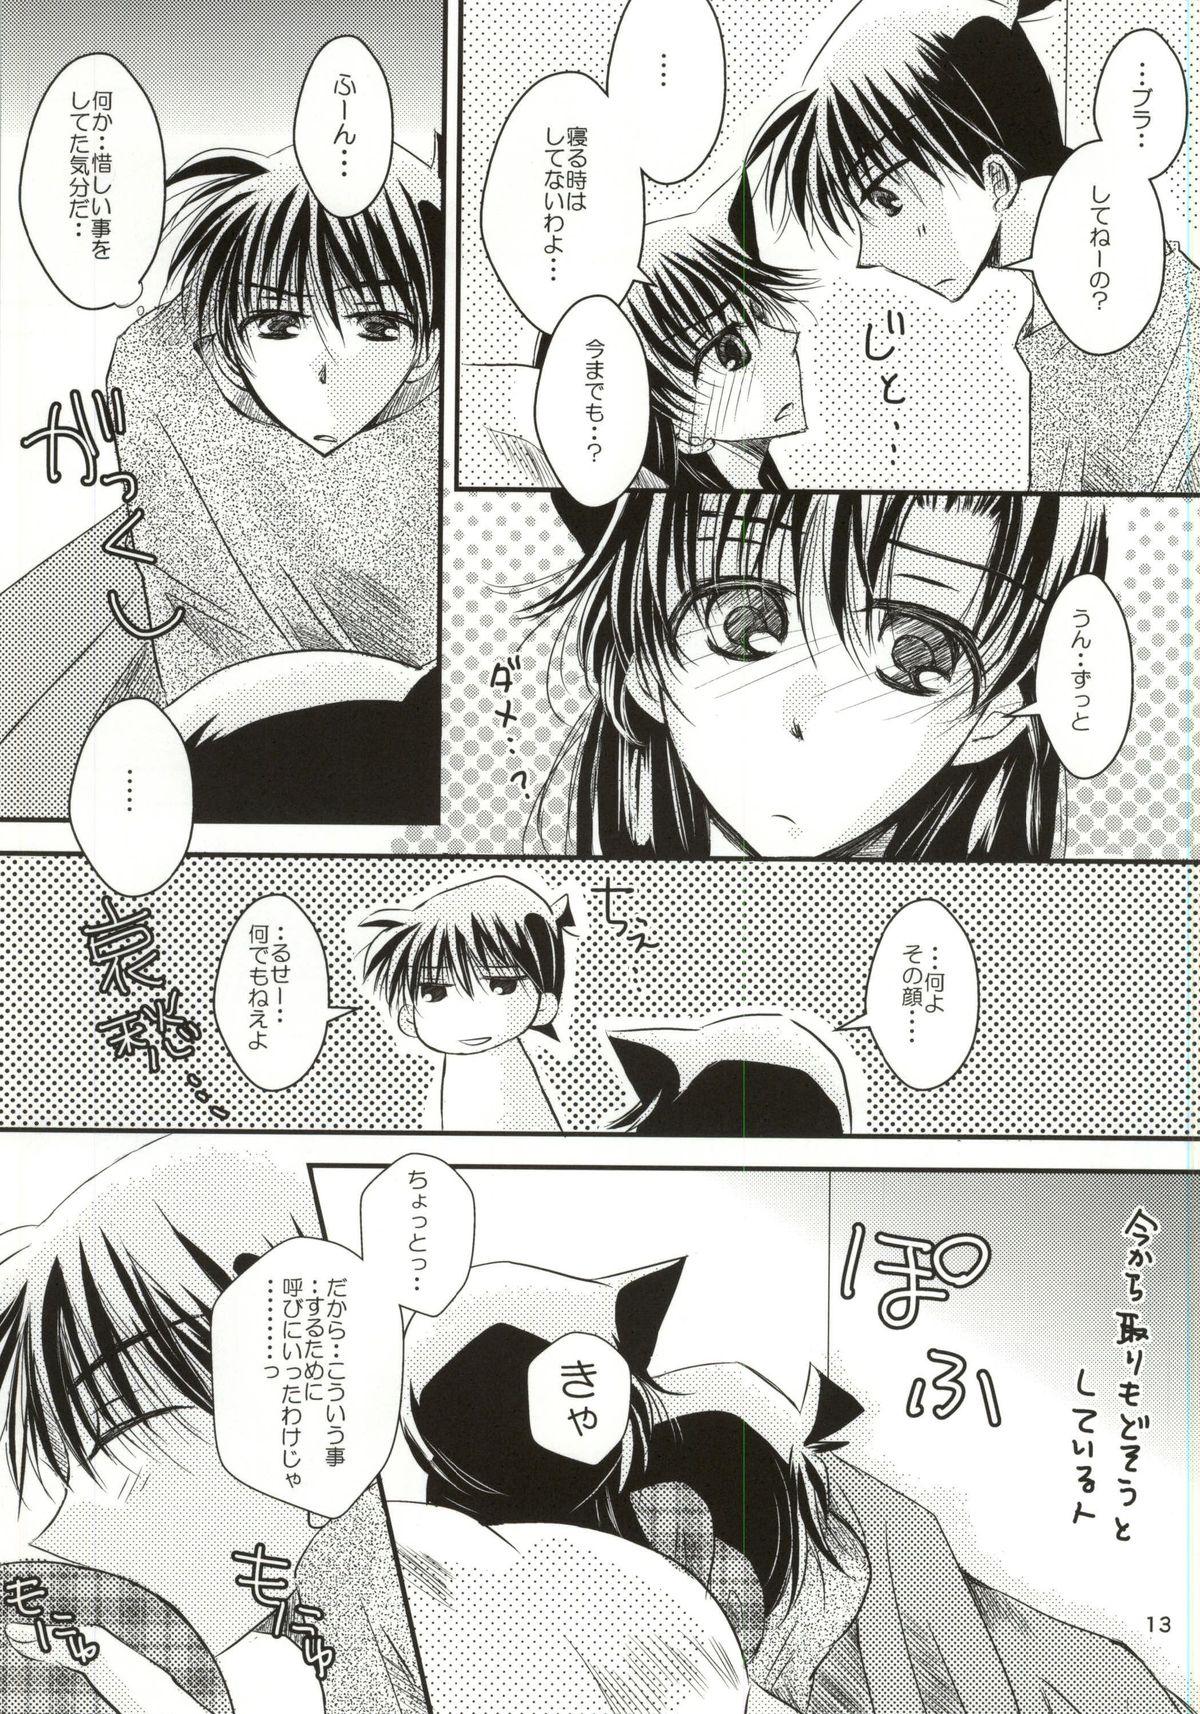 Made Yoru no Uchi ni - Detective conan Culo - Page 10